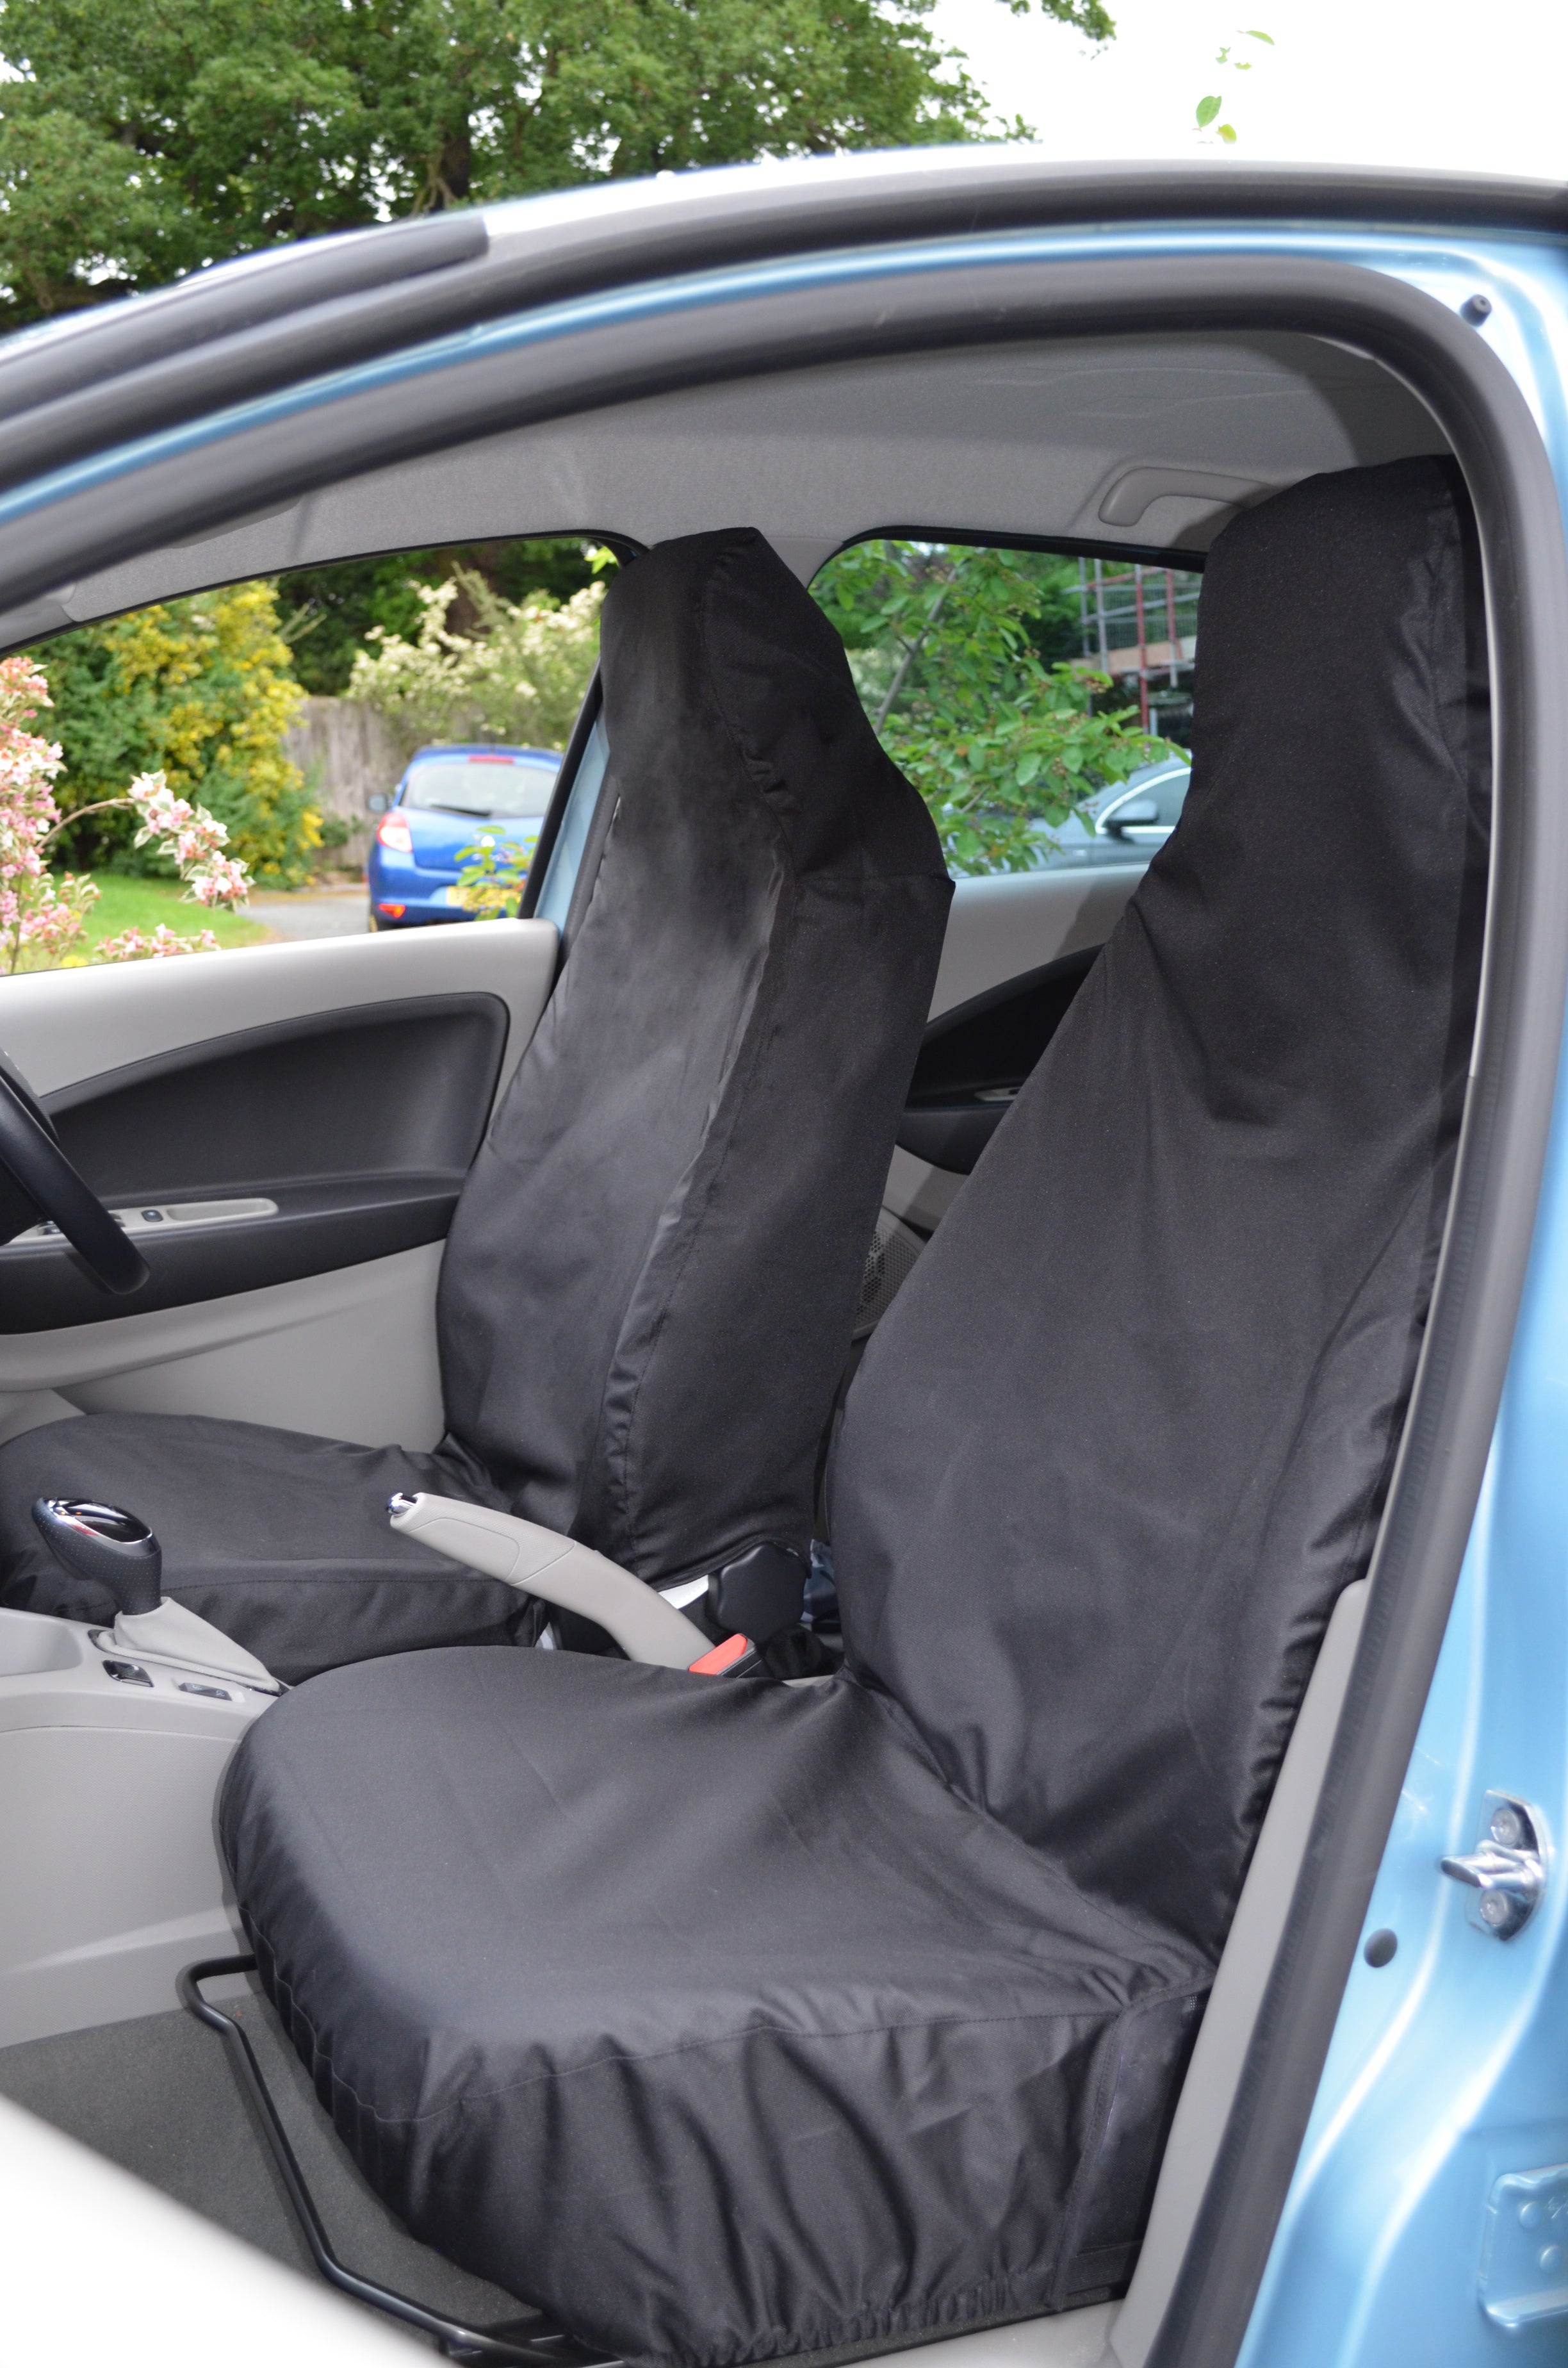 FOR Renault Zoe Black & Grey Car Seat Covers Protectors Full Set